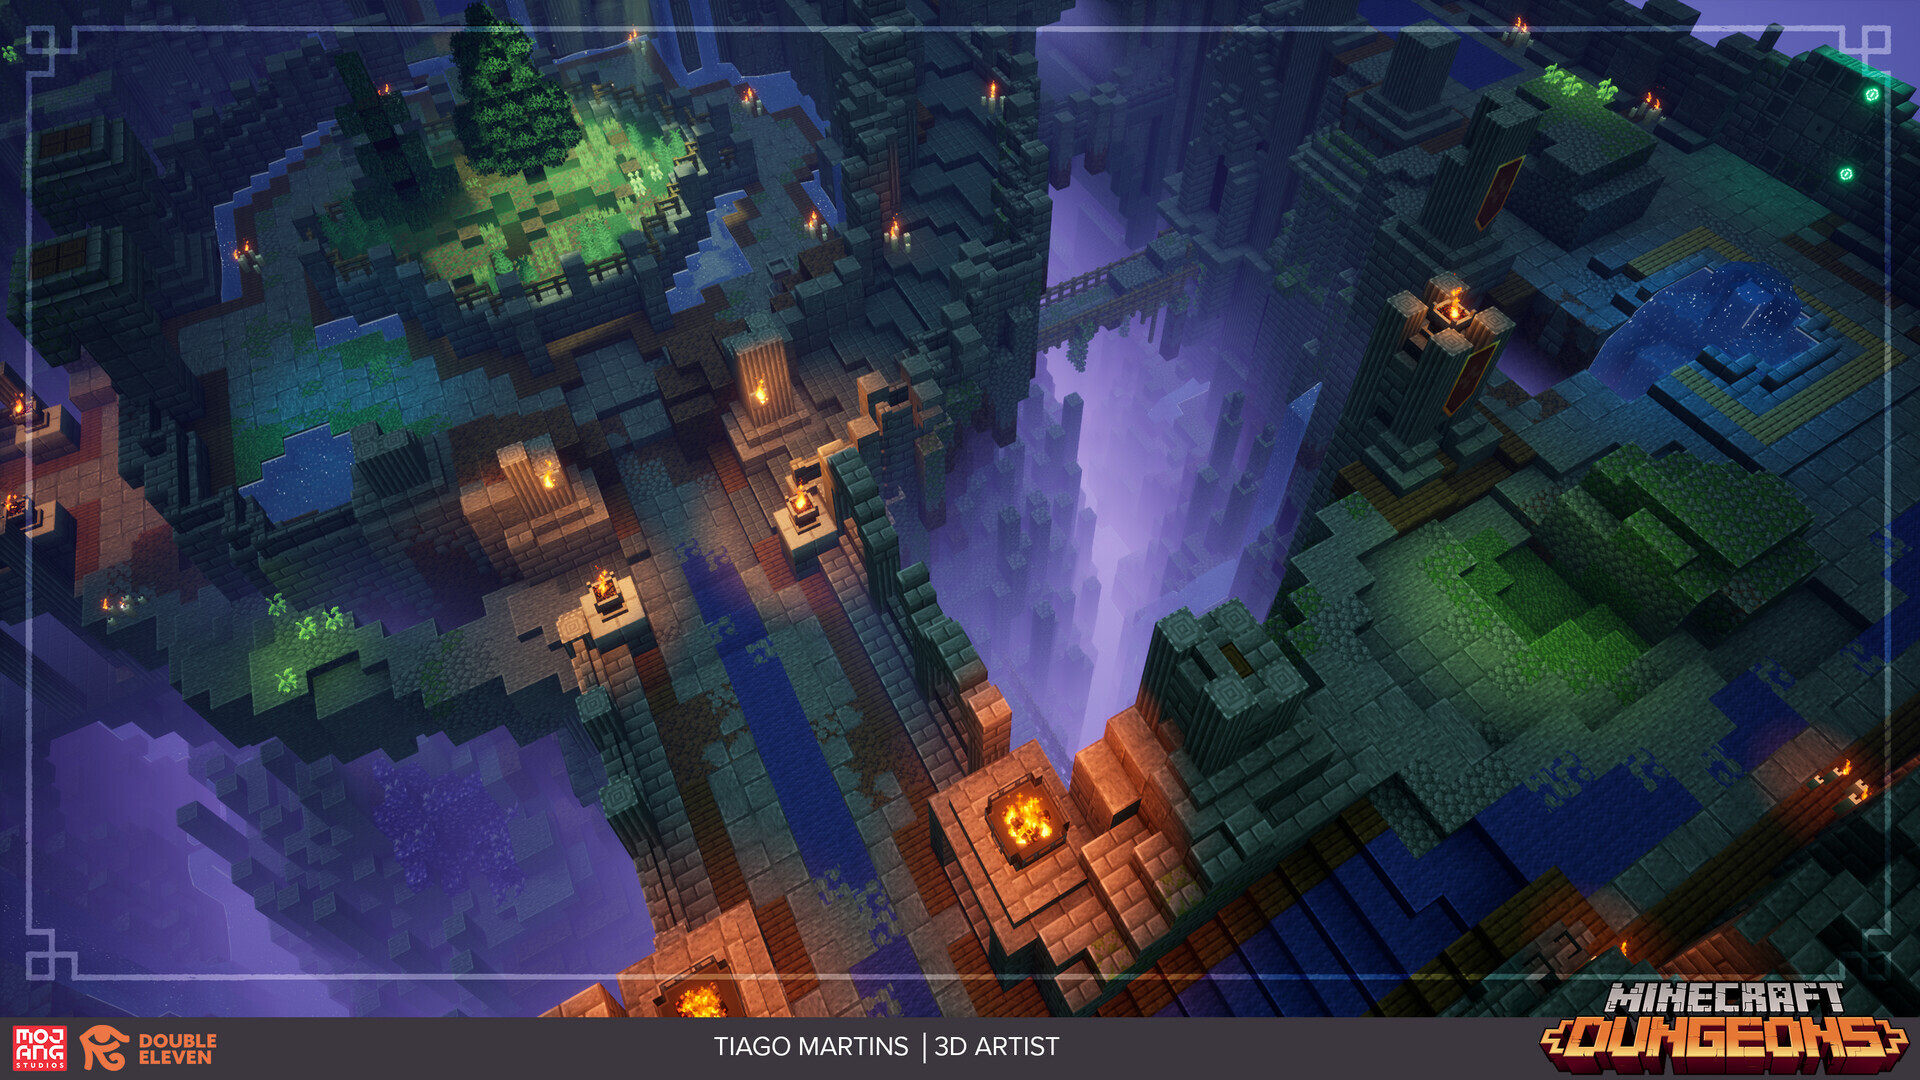 ArtStation - Minecraft Dungeons: Hidden Depths & Echoing Void